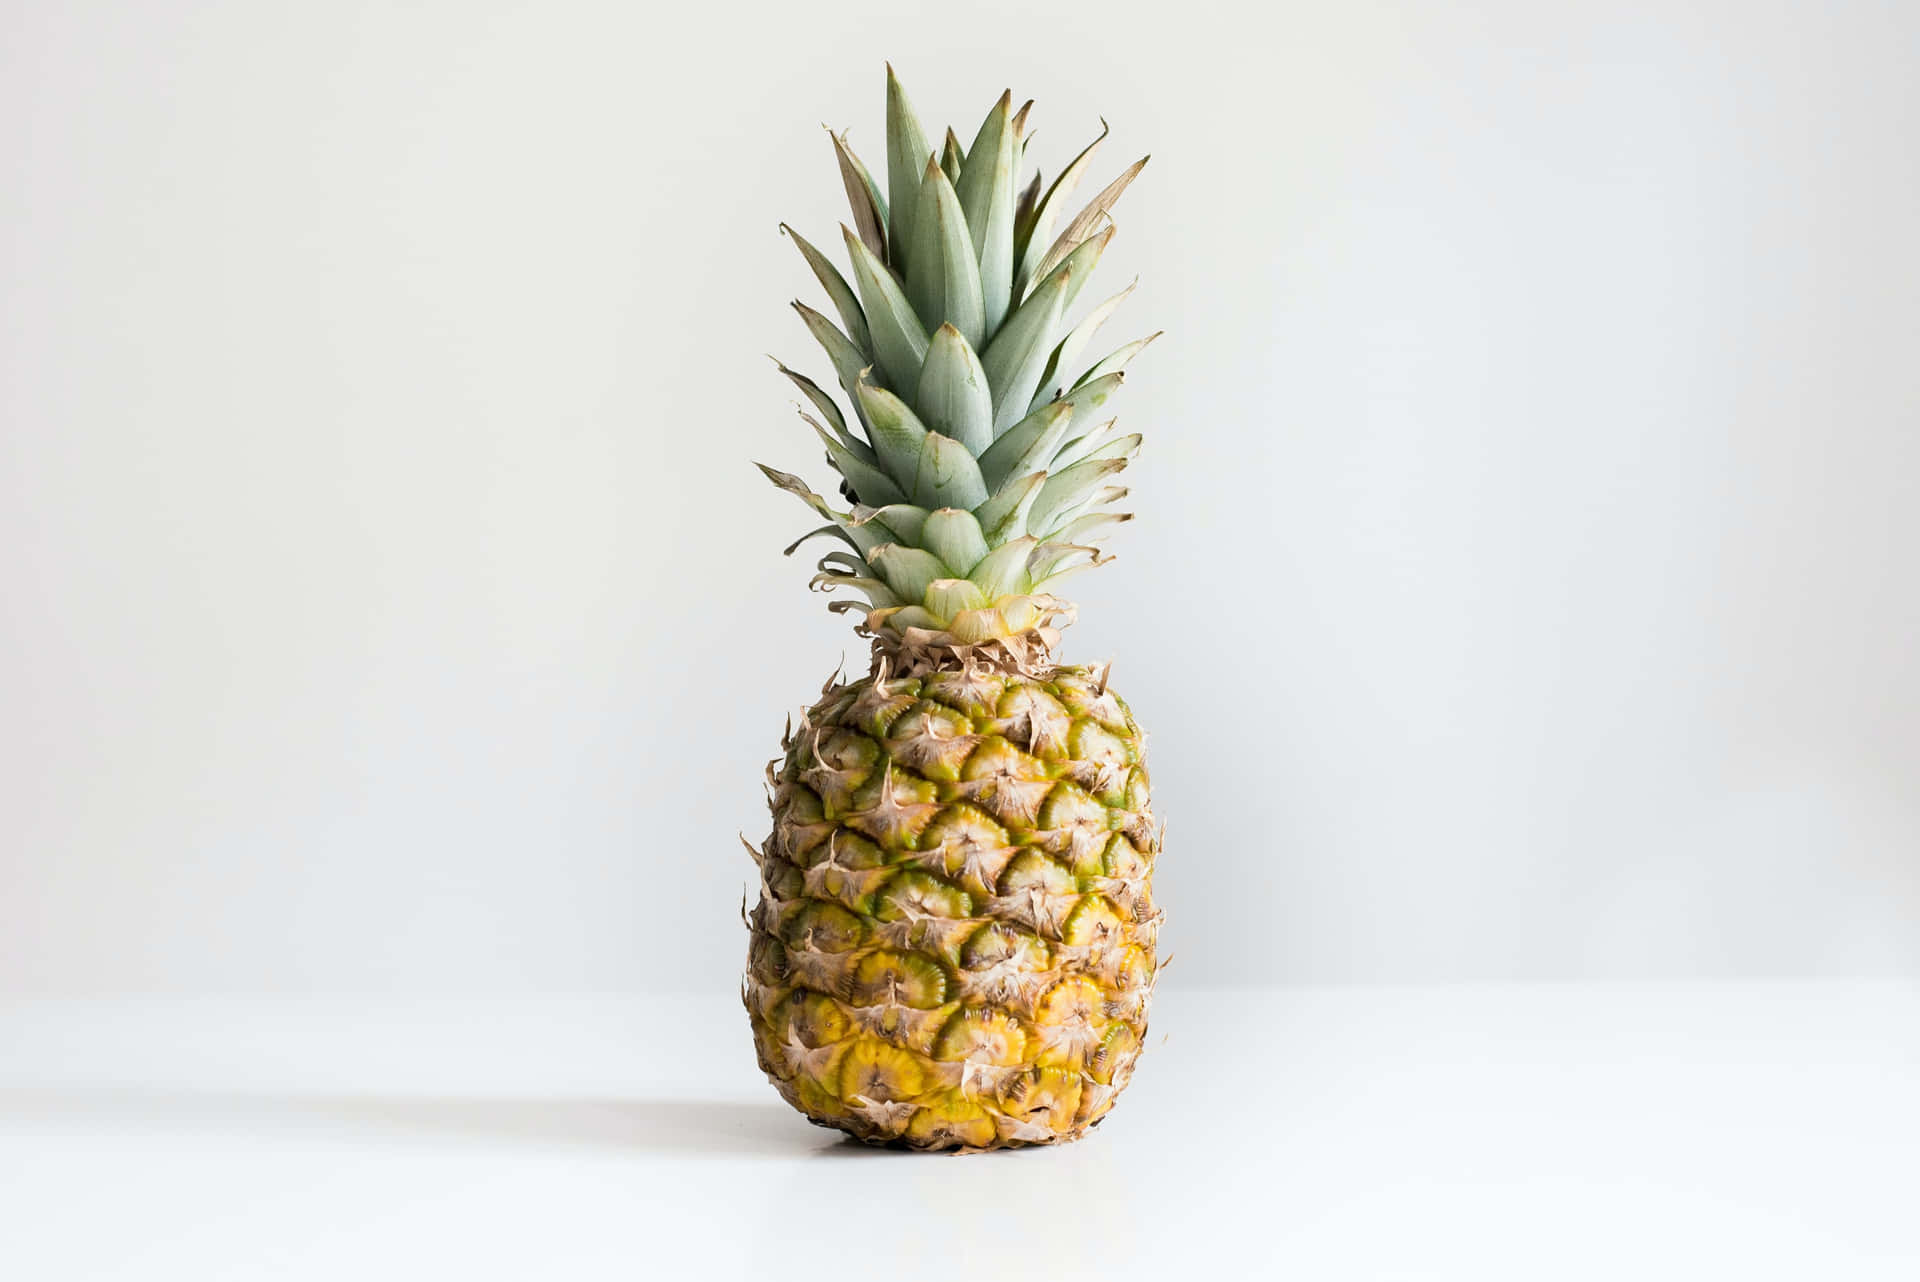 Pineapple - Sweet and Tart Refreshment